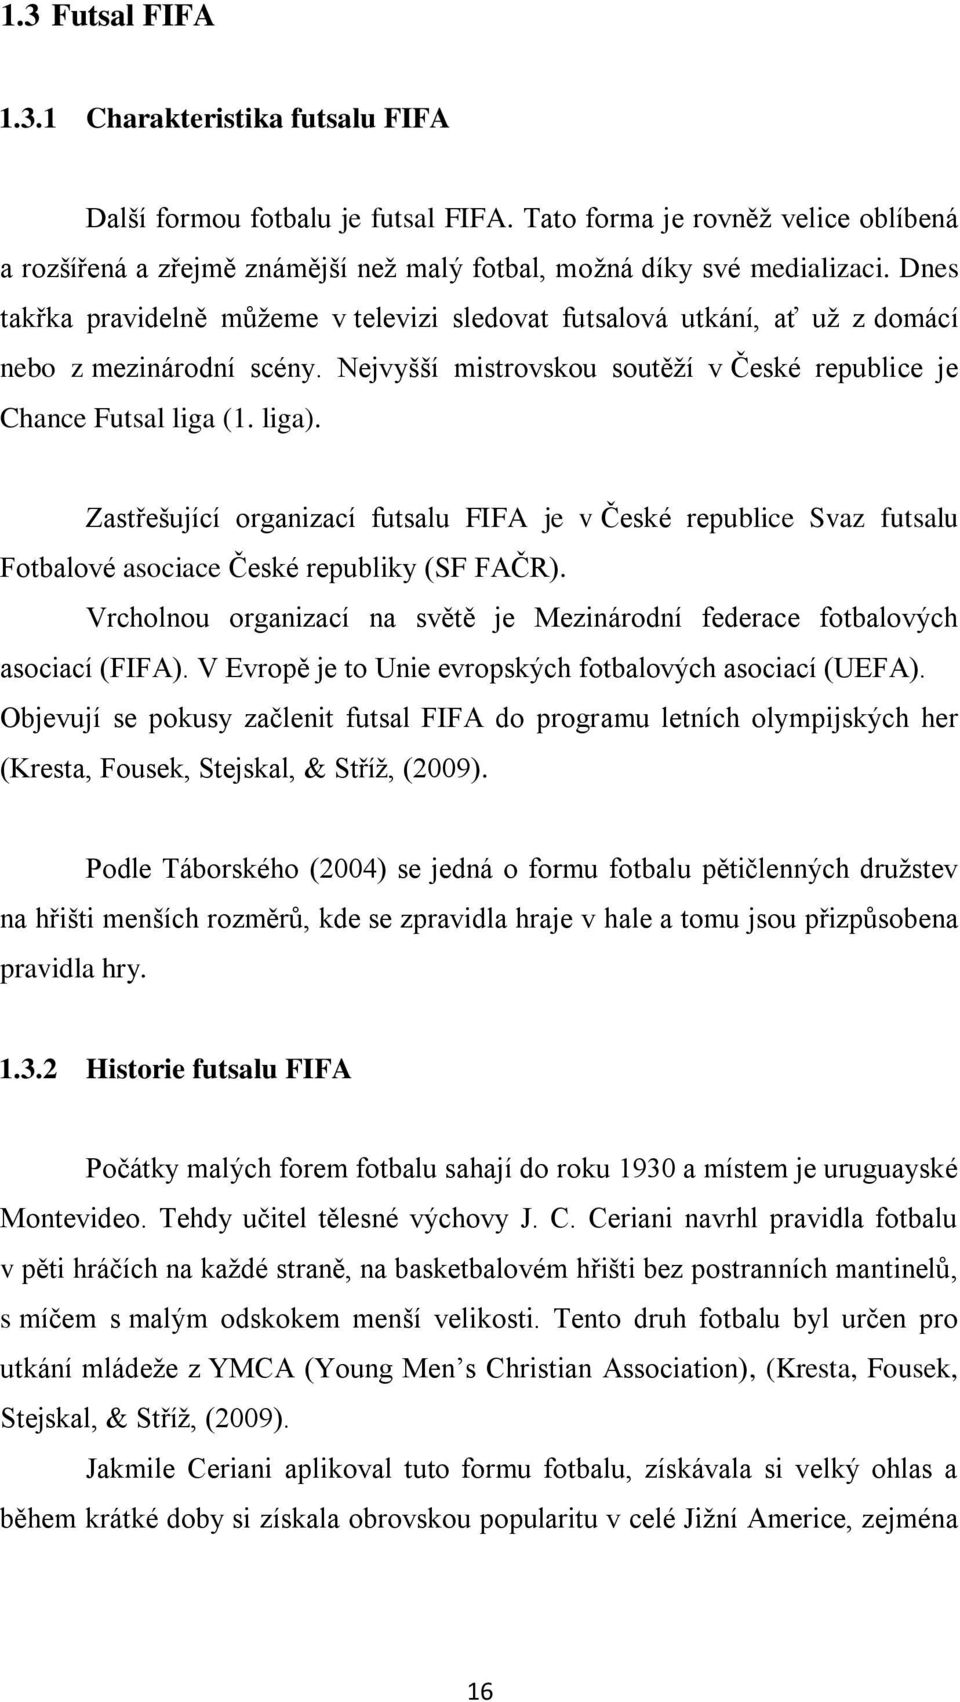 Zastřešující organizací futsalu FIFA je v České republice Svaz futsalu Fotbalové asociace České republiky (SF FAČR). Vrcholnou organizací na světě je Mezinárodní federace fotbalových asociací (FIFA).